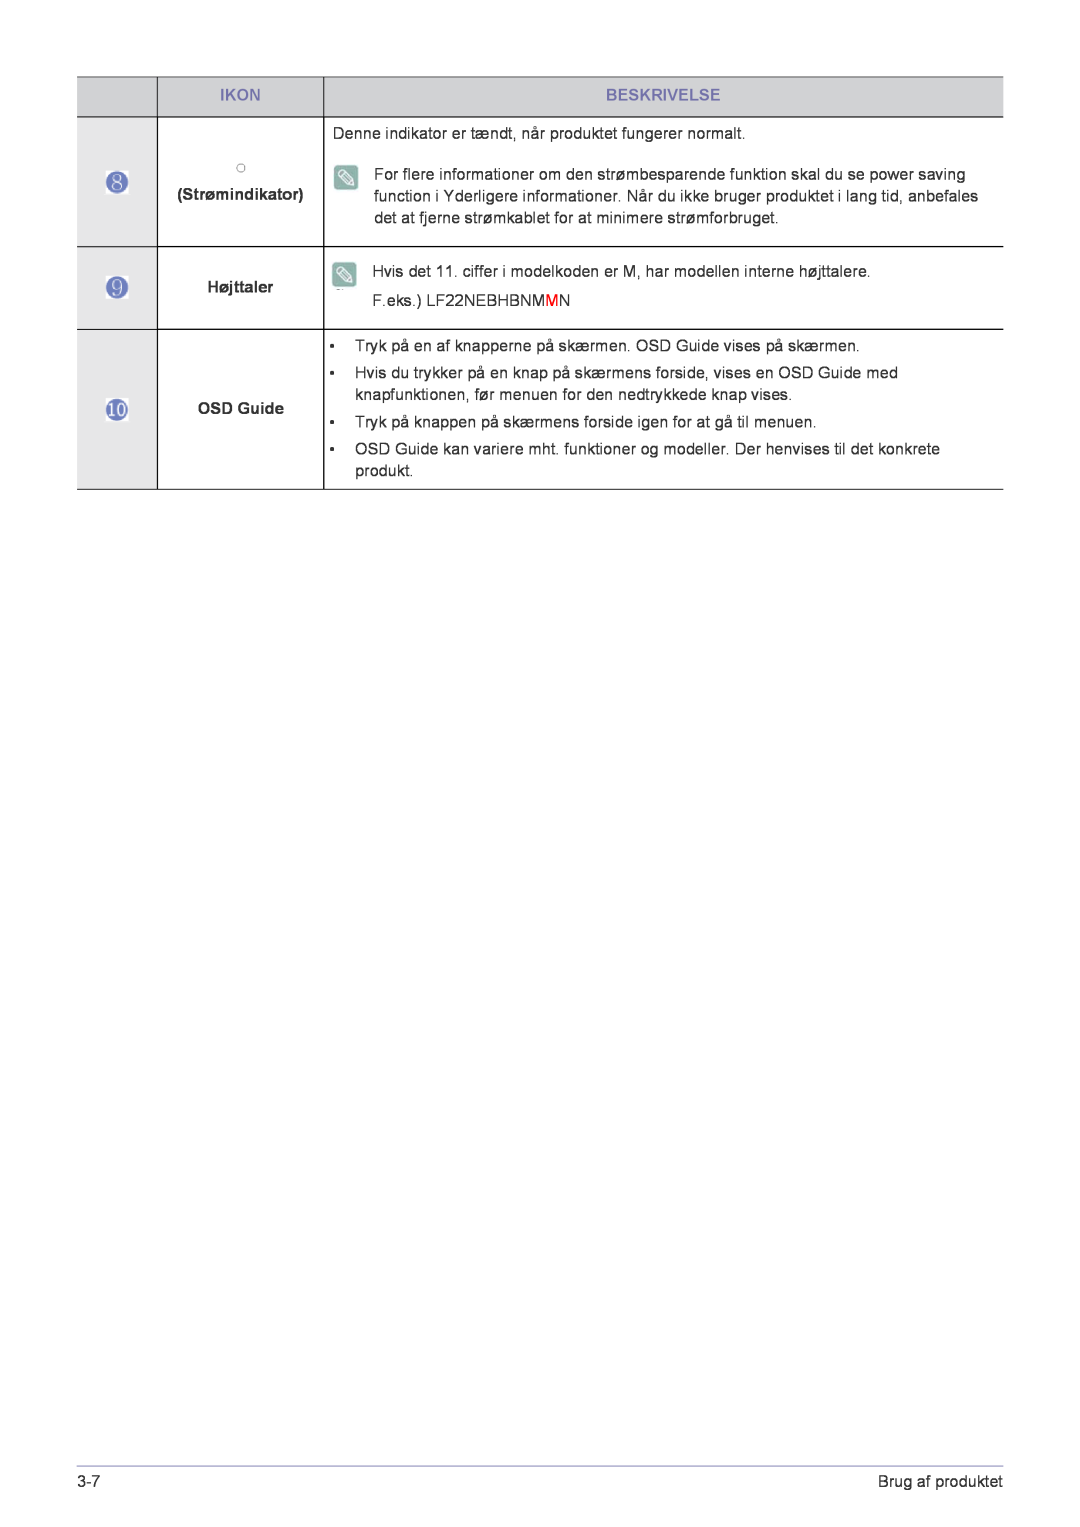 Samsung LF22NPBHBNP/EN manual Ikon, Beskrivelse, Strømindikator, Højttaler, OSD Guide 